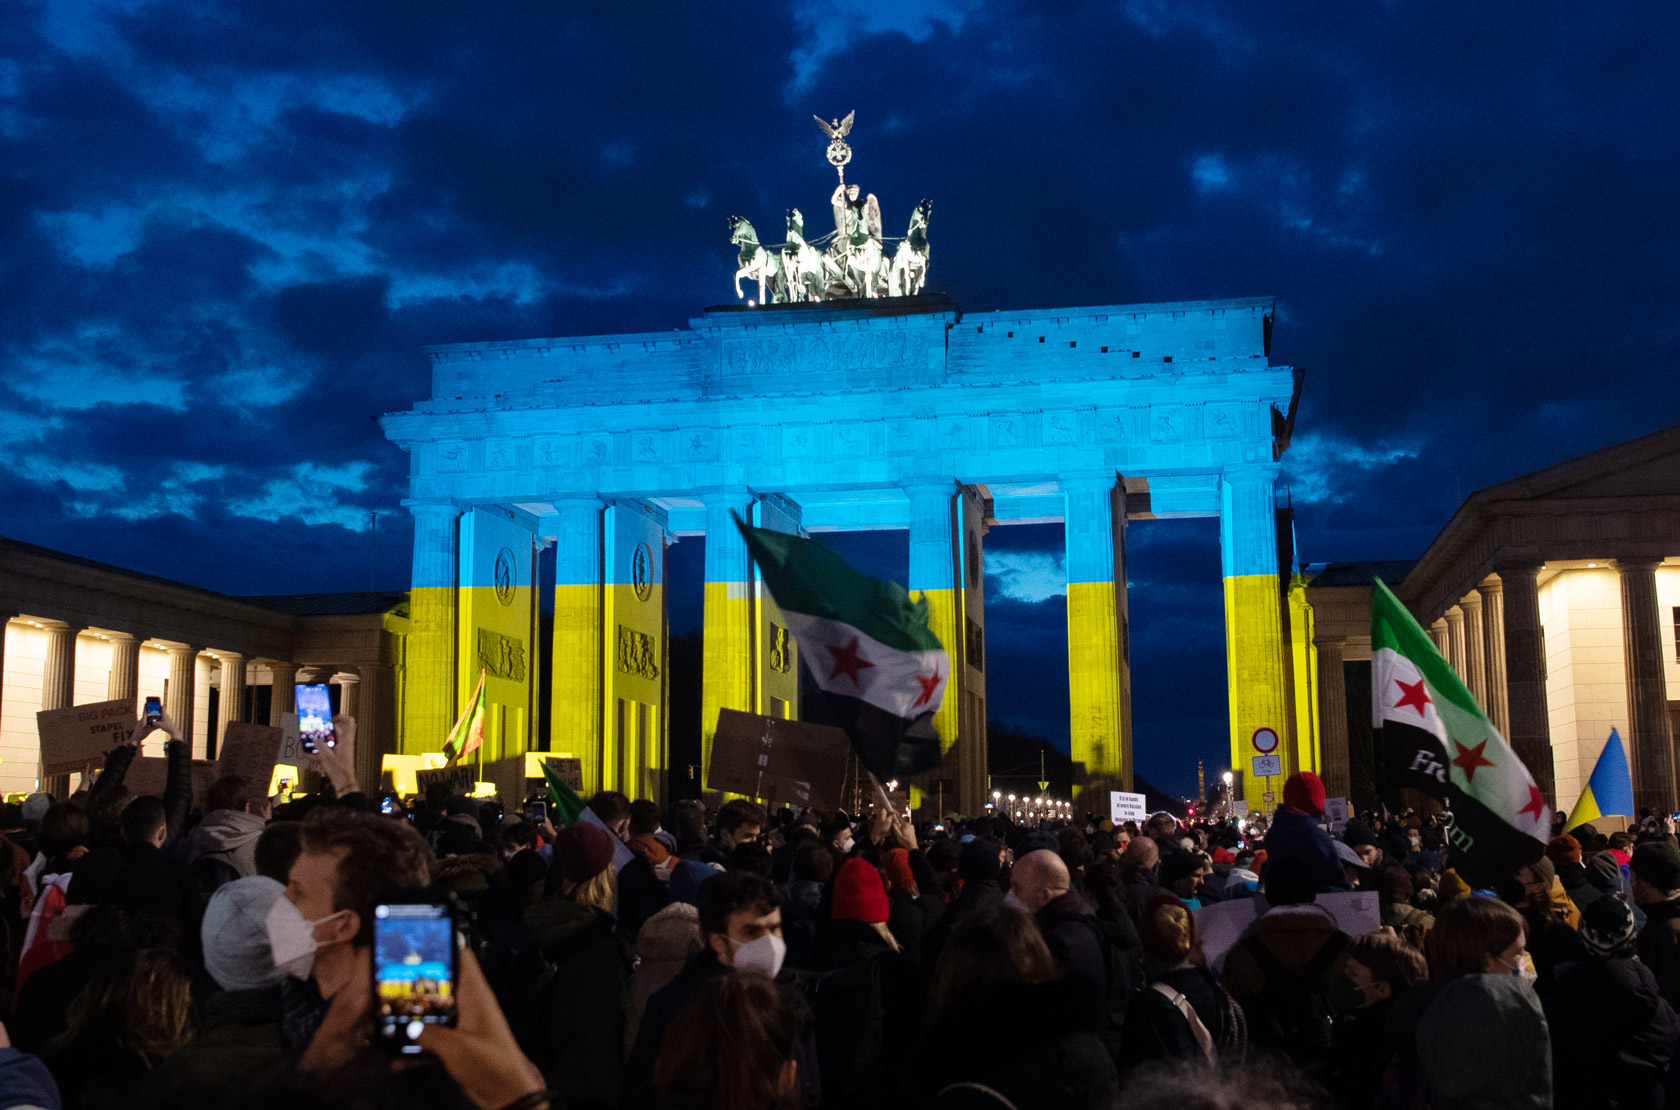 Η Πύλη του Βρανδεμβούργου στο Βερολίνο θα φωτιστεί στα χρώματα της ουκρανικής σημαίας στις 24 Φεβρουαρίου.